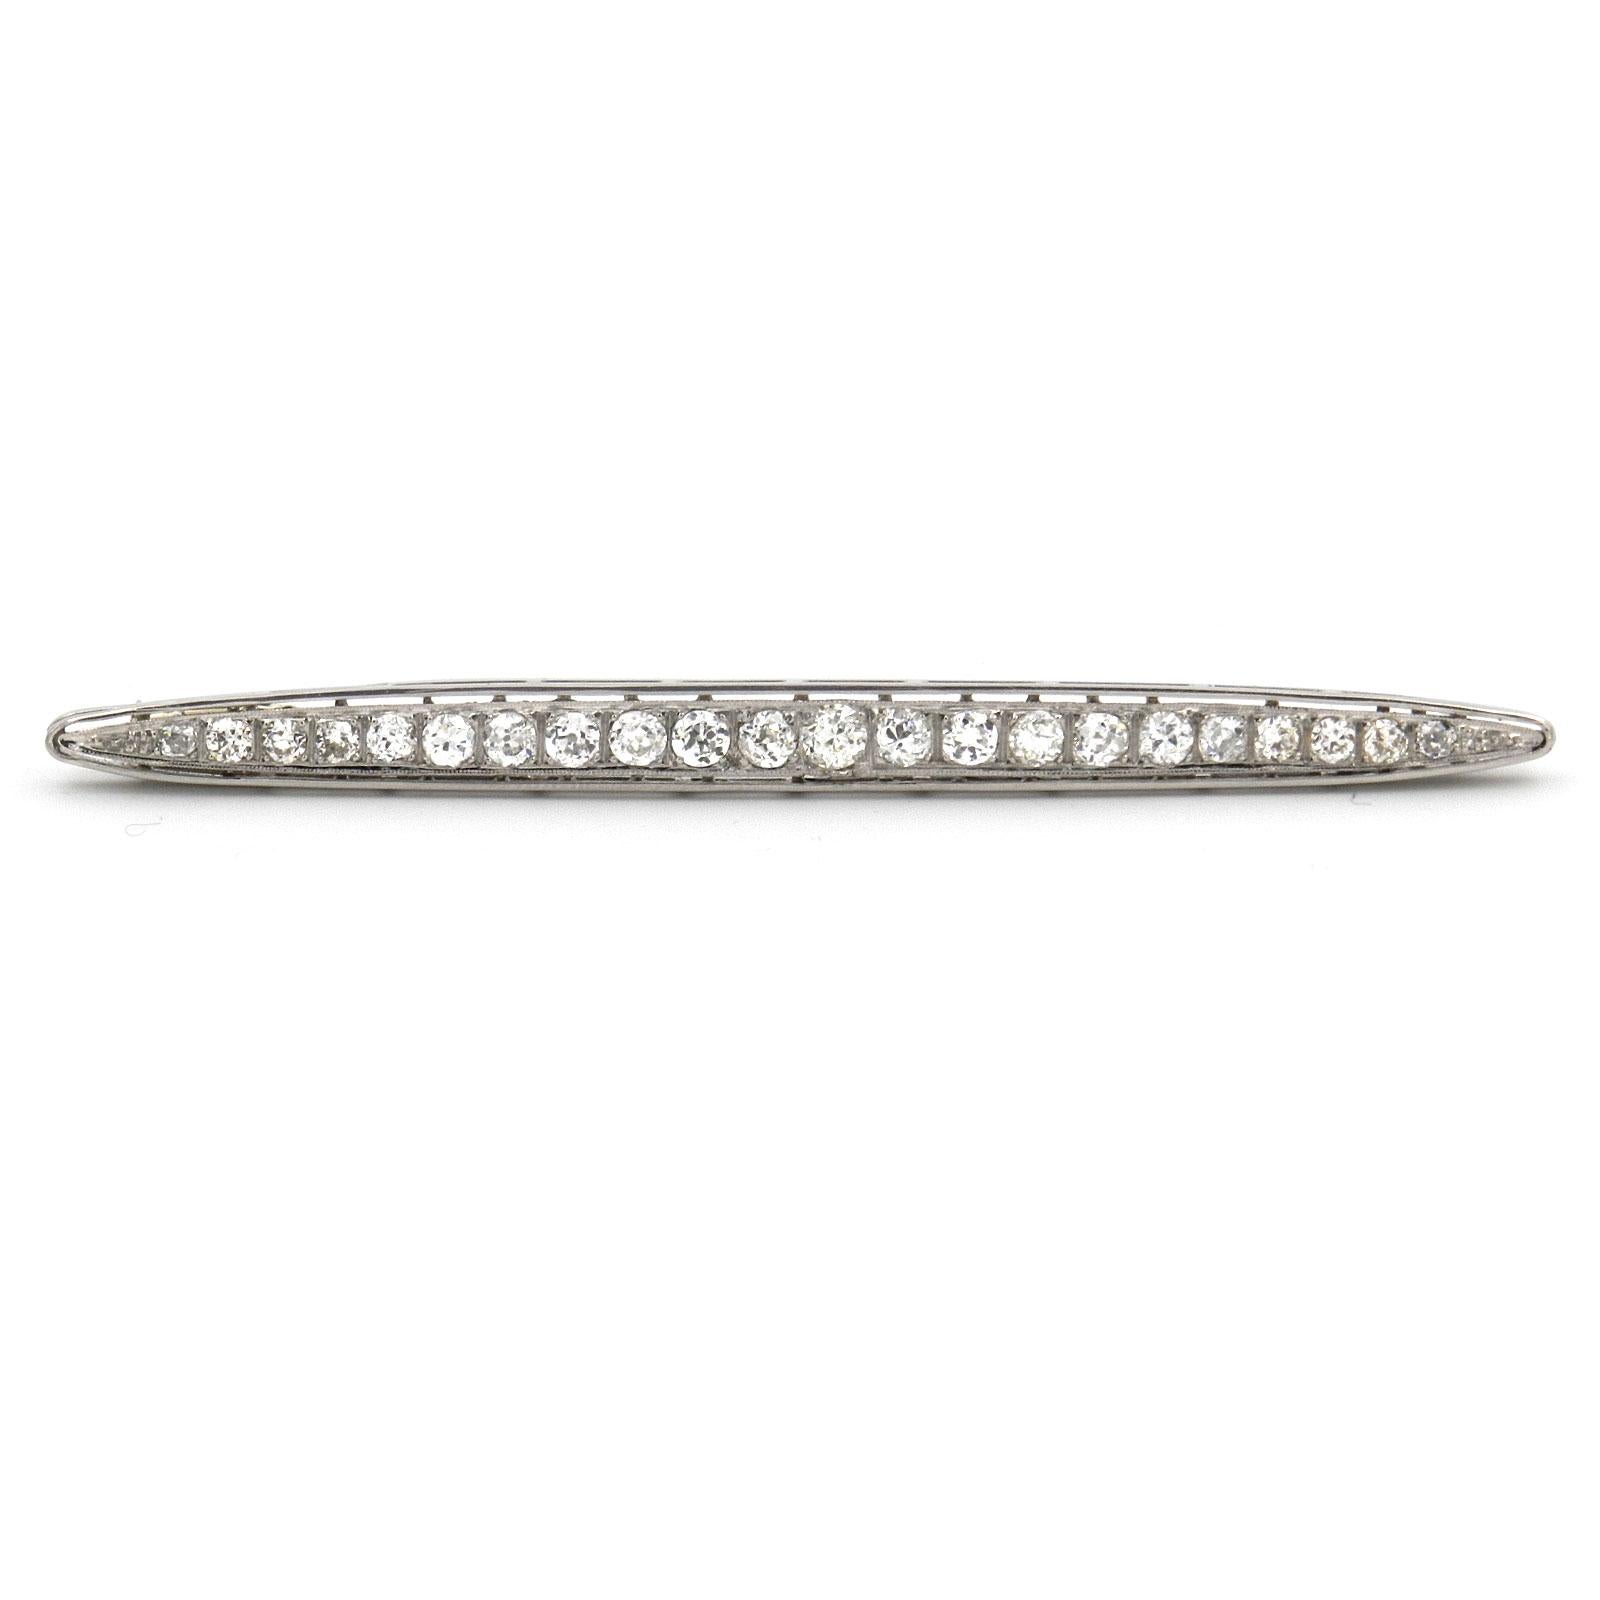 Art Deco 3 Karat Diamant 18K Weißgold Bar Brosche Pin, um 1930

Beeindruckende 9,6 cm (3,78 inch) lange Diamant-Brosche in Bootsform, gefasst in einer Reihe von 22 Diamanten mit insgesamt 3,0 Karat im Alt- und Übergangsschliff, gefasst in Platin,